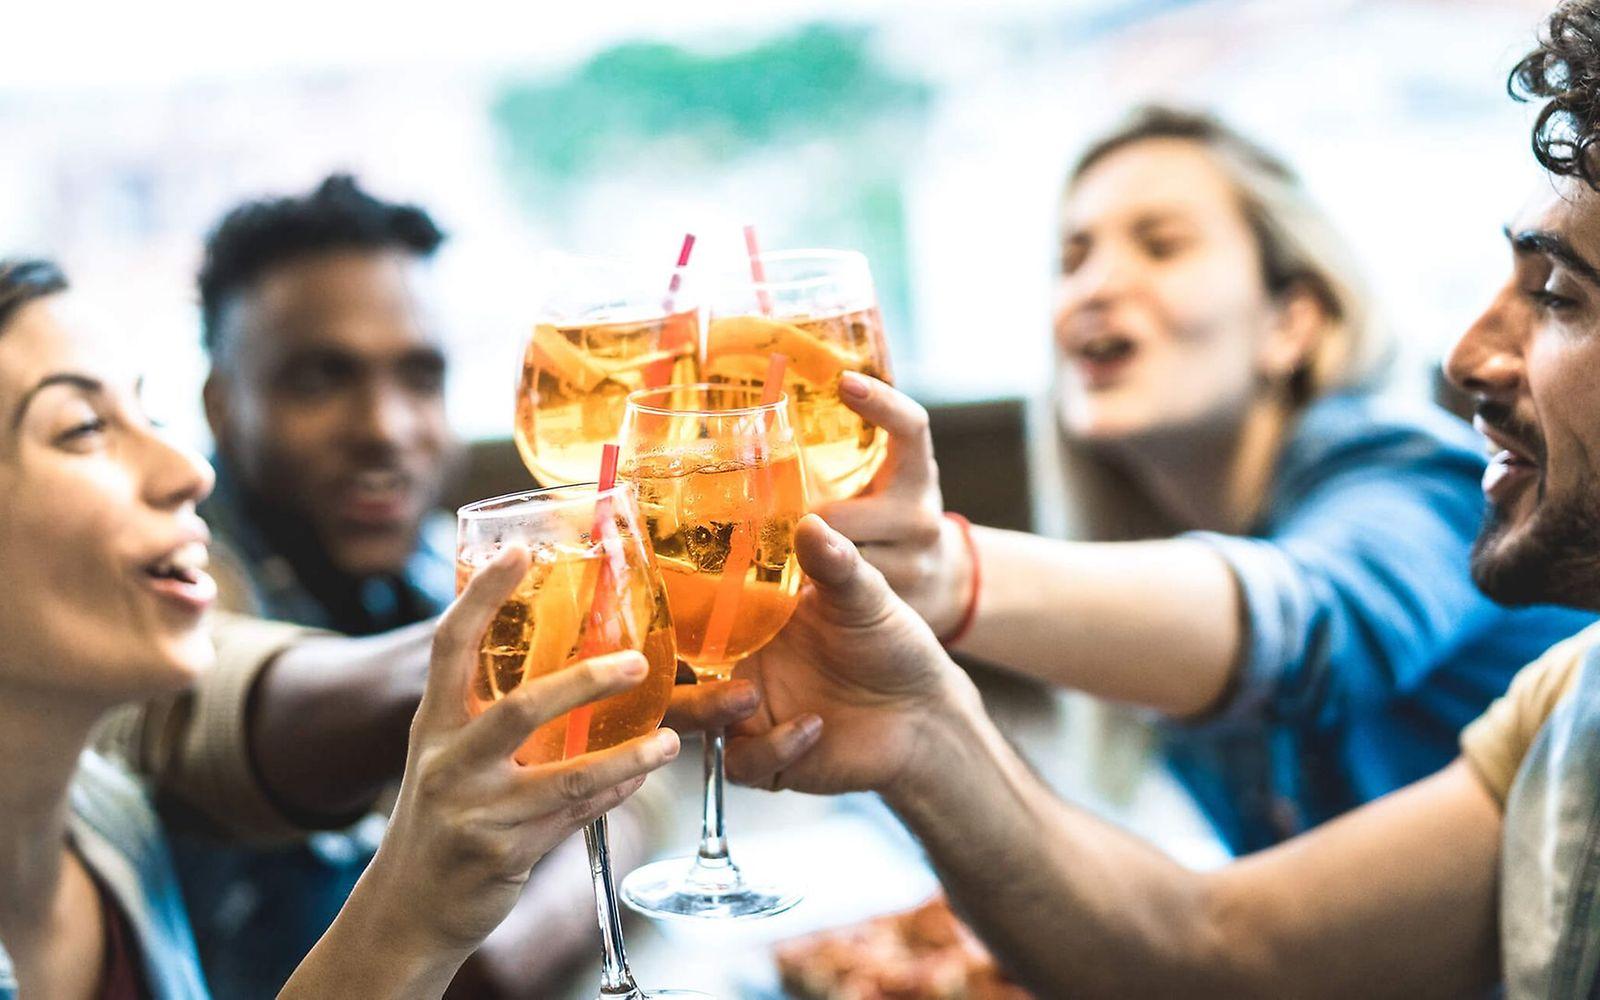 Alkohol Droge Nr.1: Vier junge Leute sitzen zusammen und stoßen freudig mit einem Aperol-Cocktail an